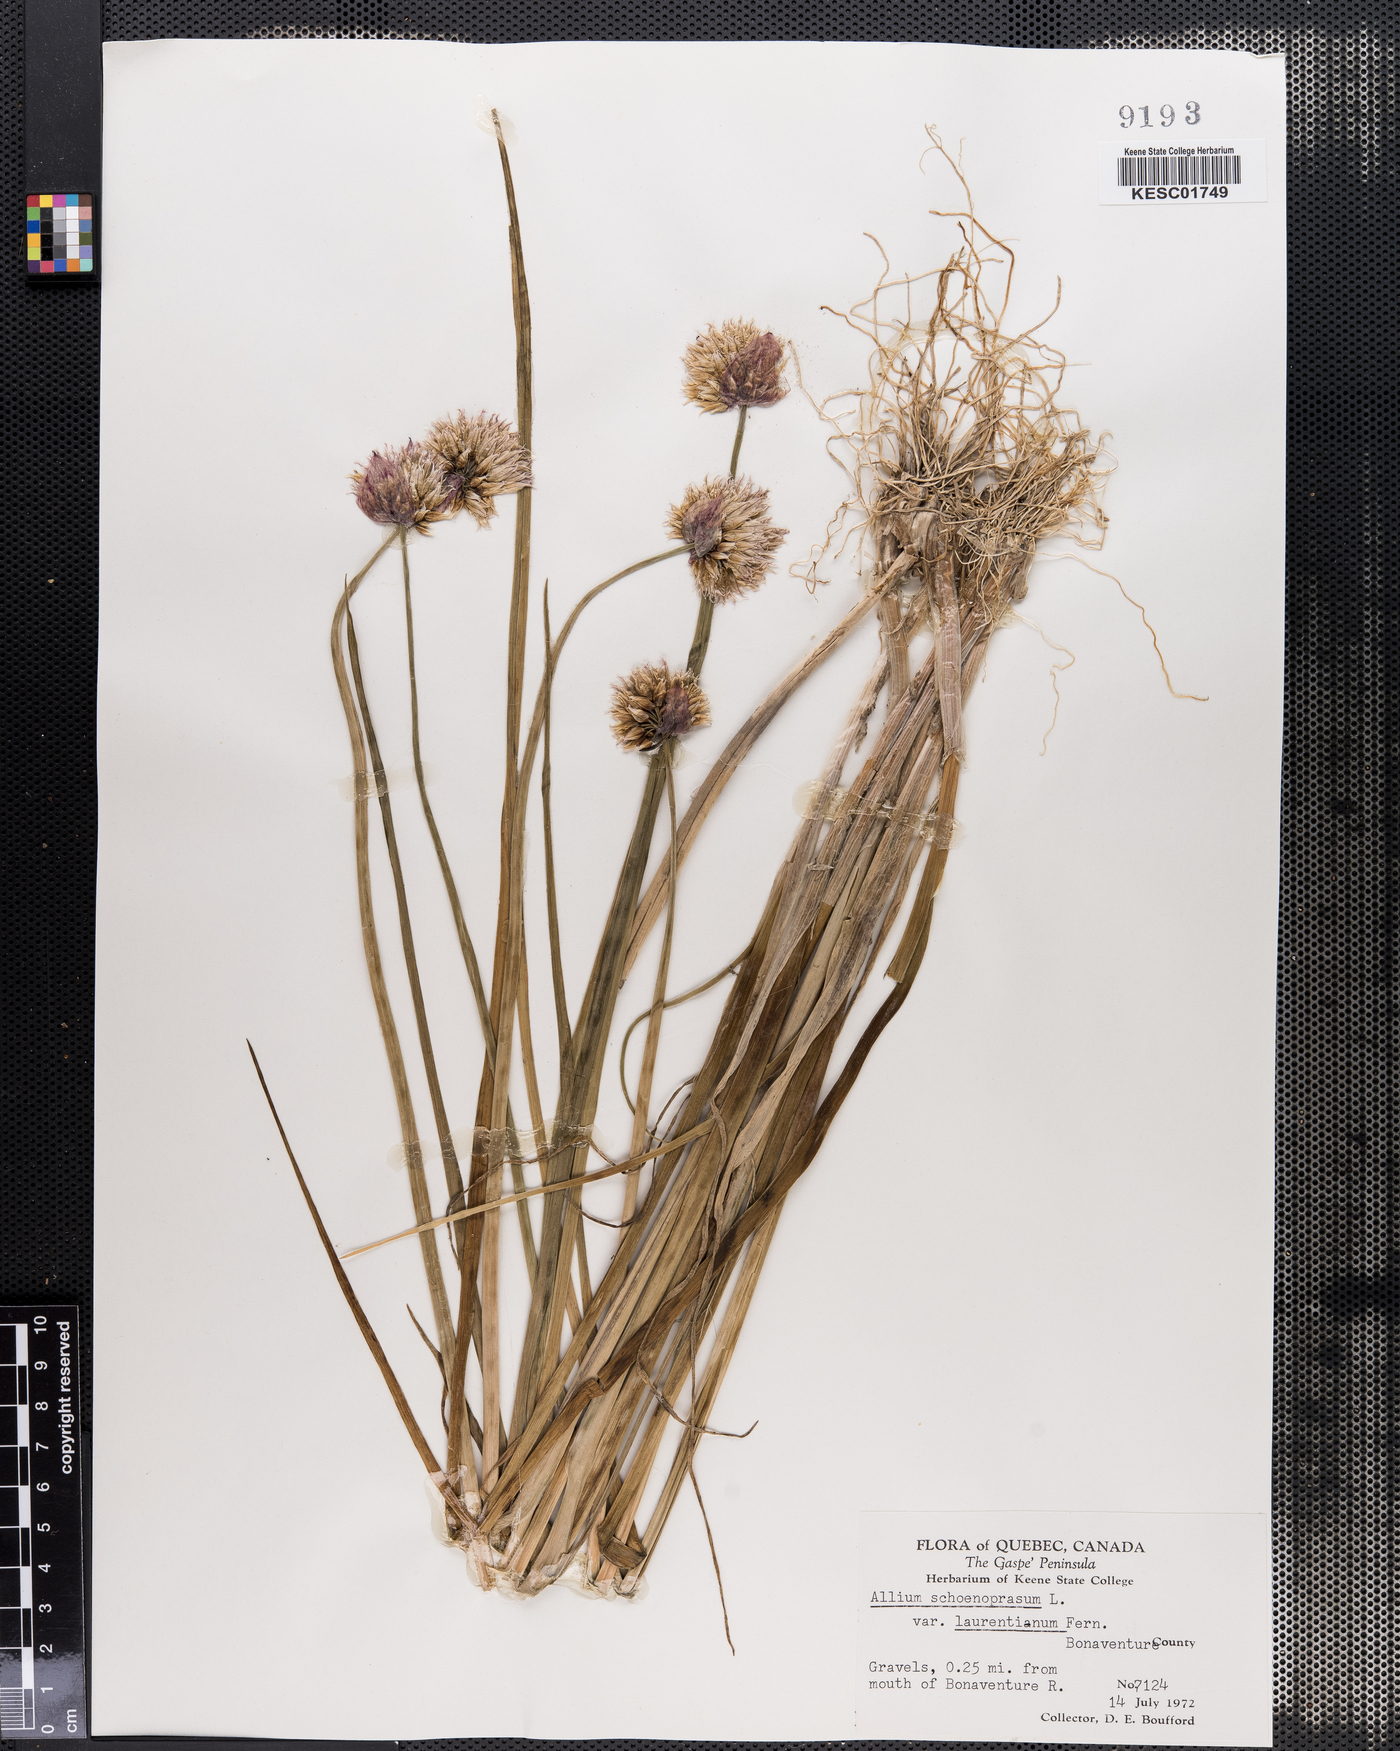 Allium schoenoprasum var. laurentianum image